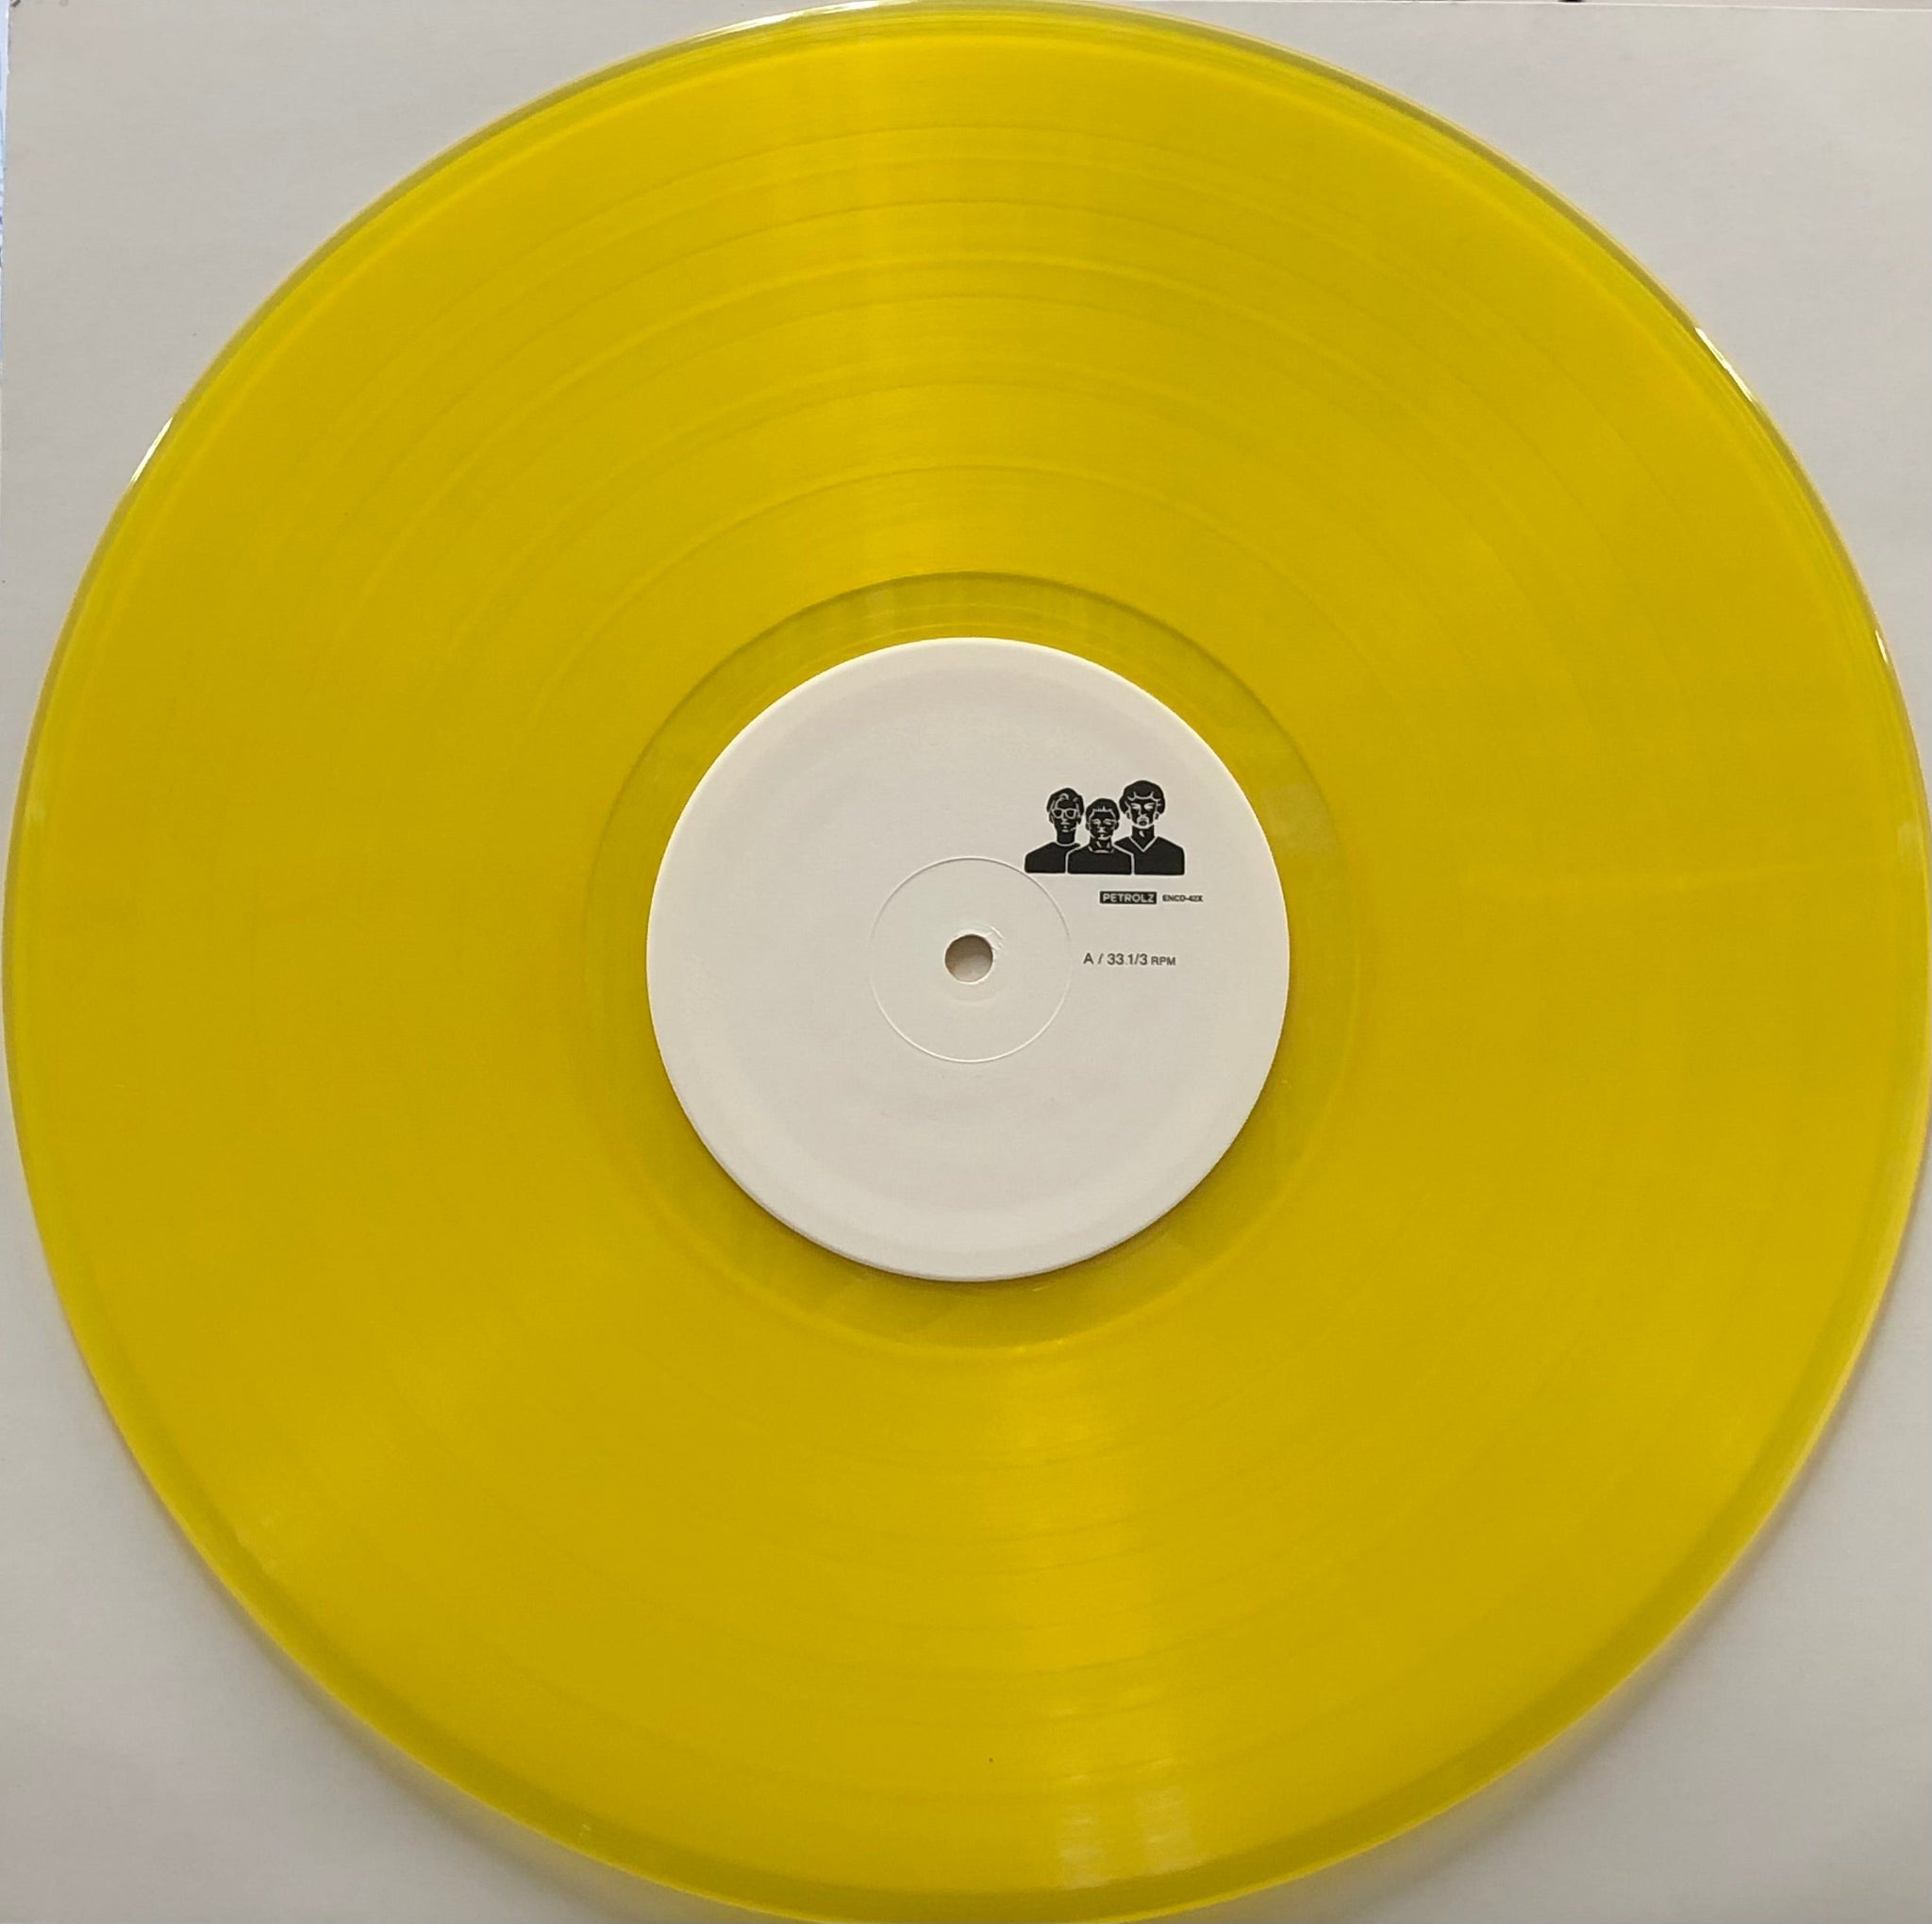 ペトロールズ PETROLZ / Ggkknrssstw (Yellow Vinyl) (Enndisc, ENCD 